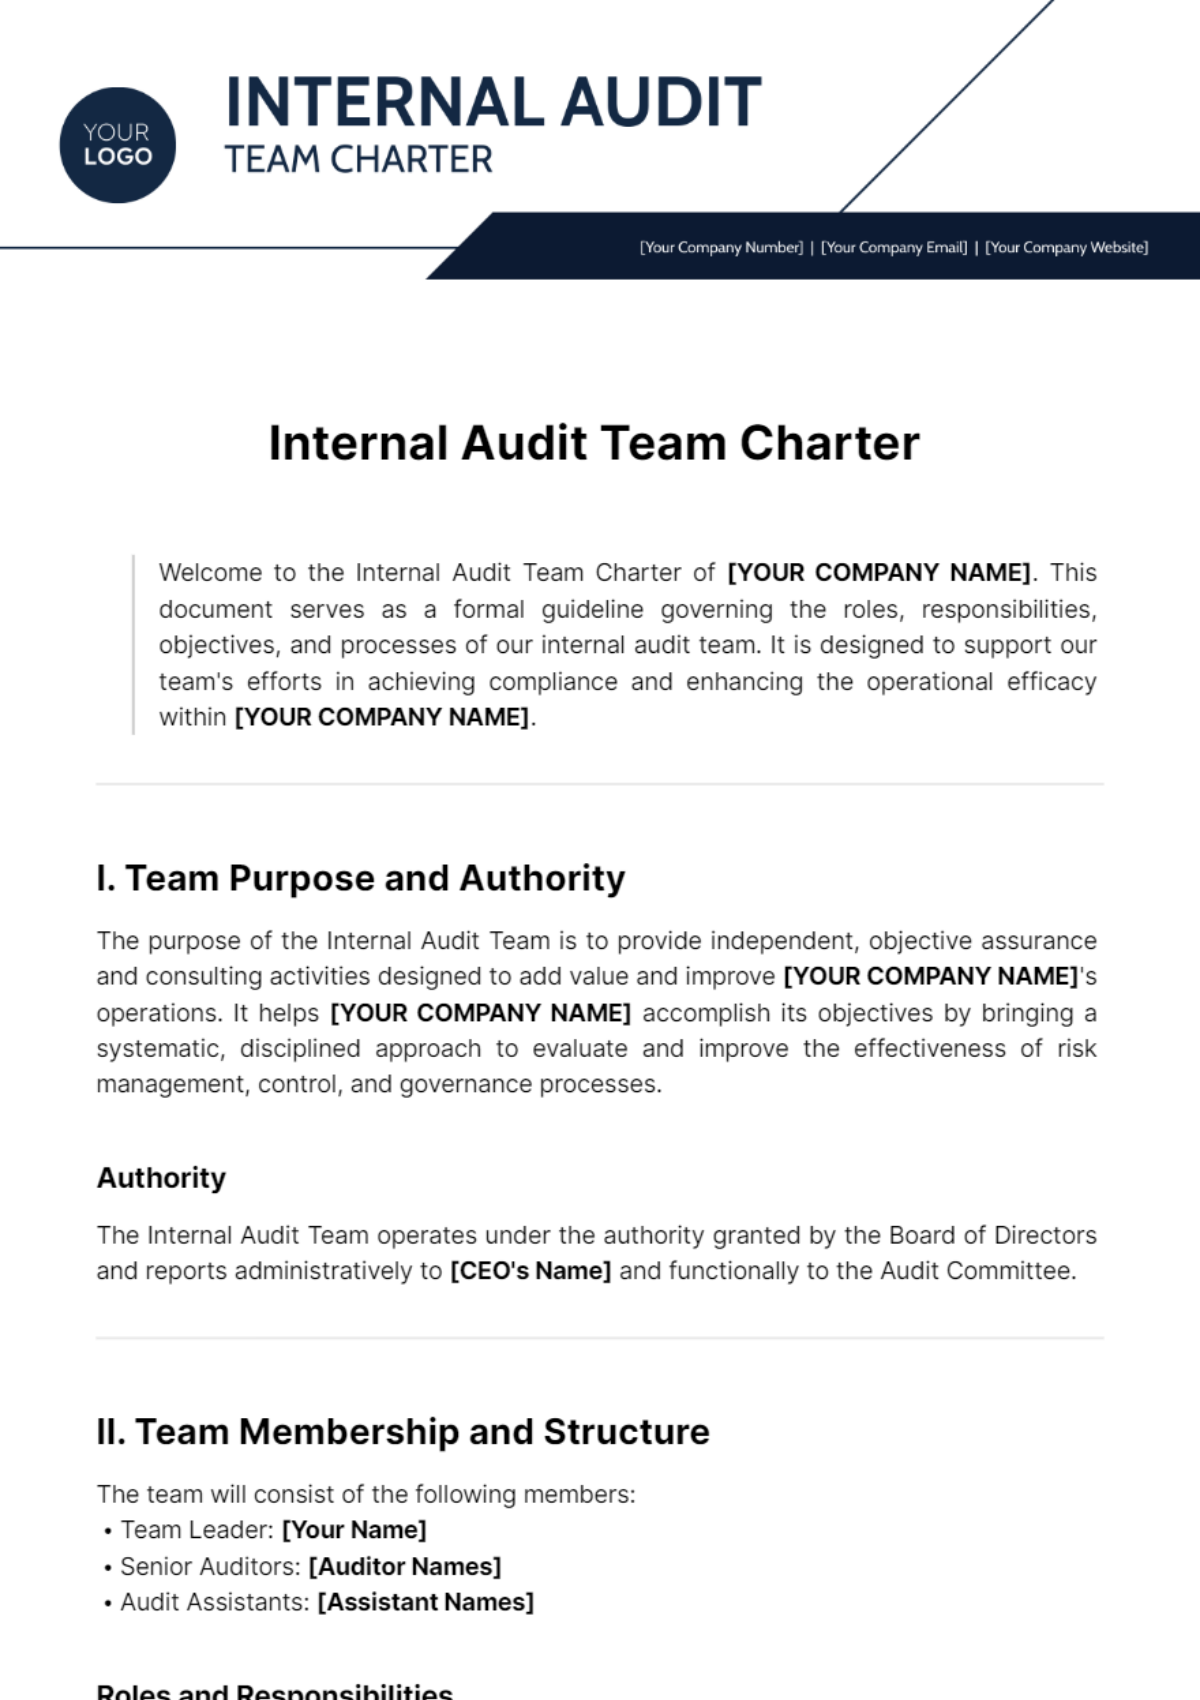 Free Internal Audit Team Charter Template